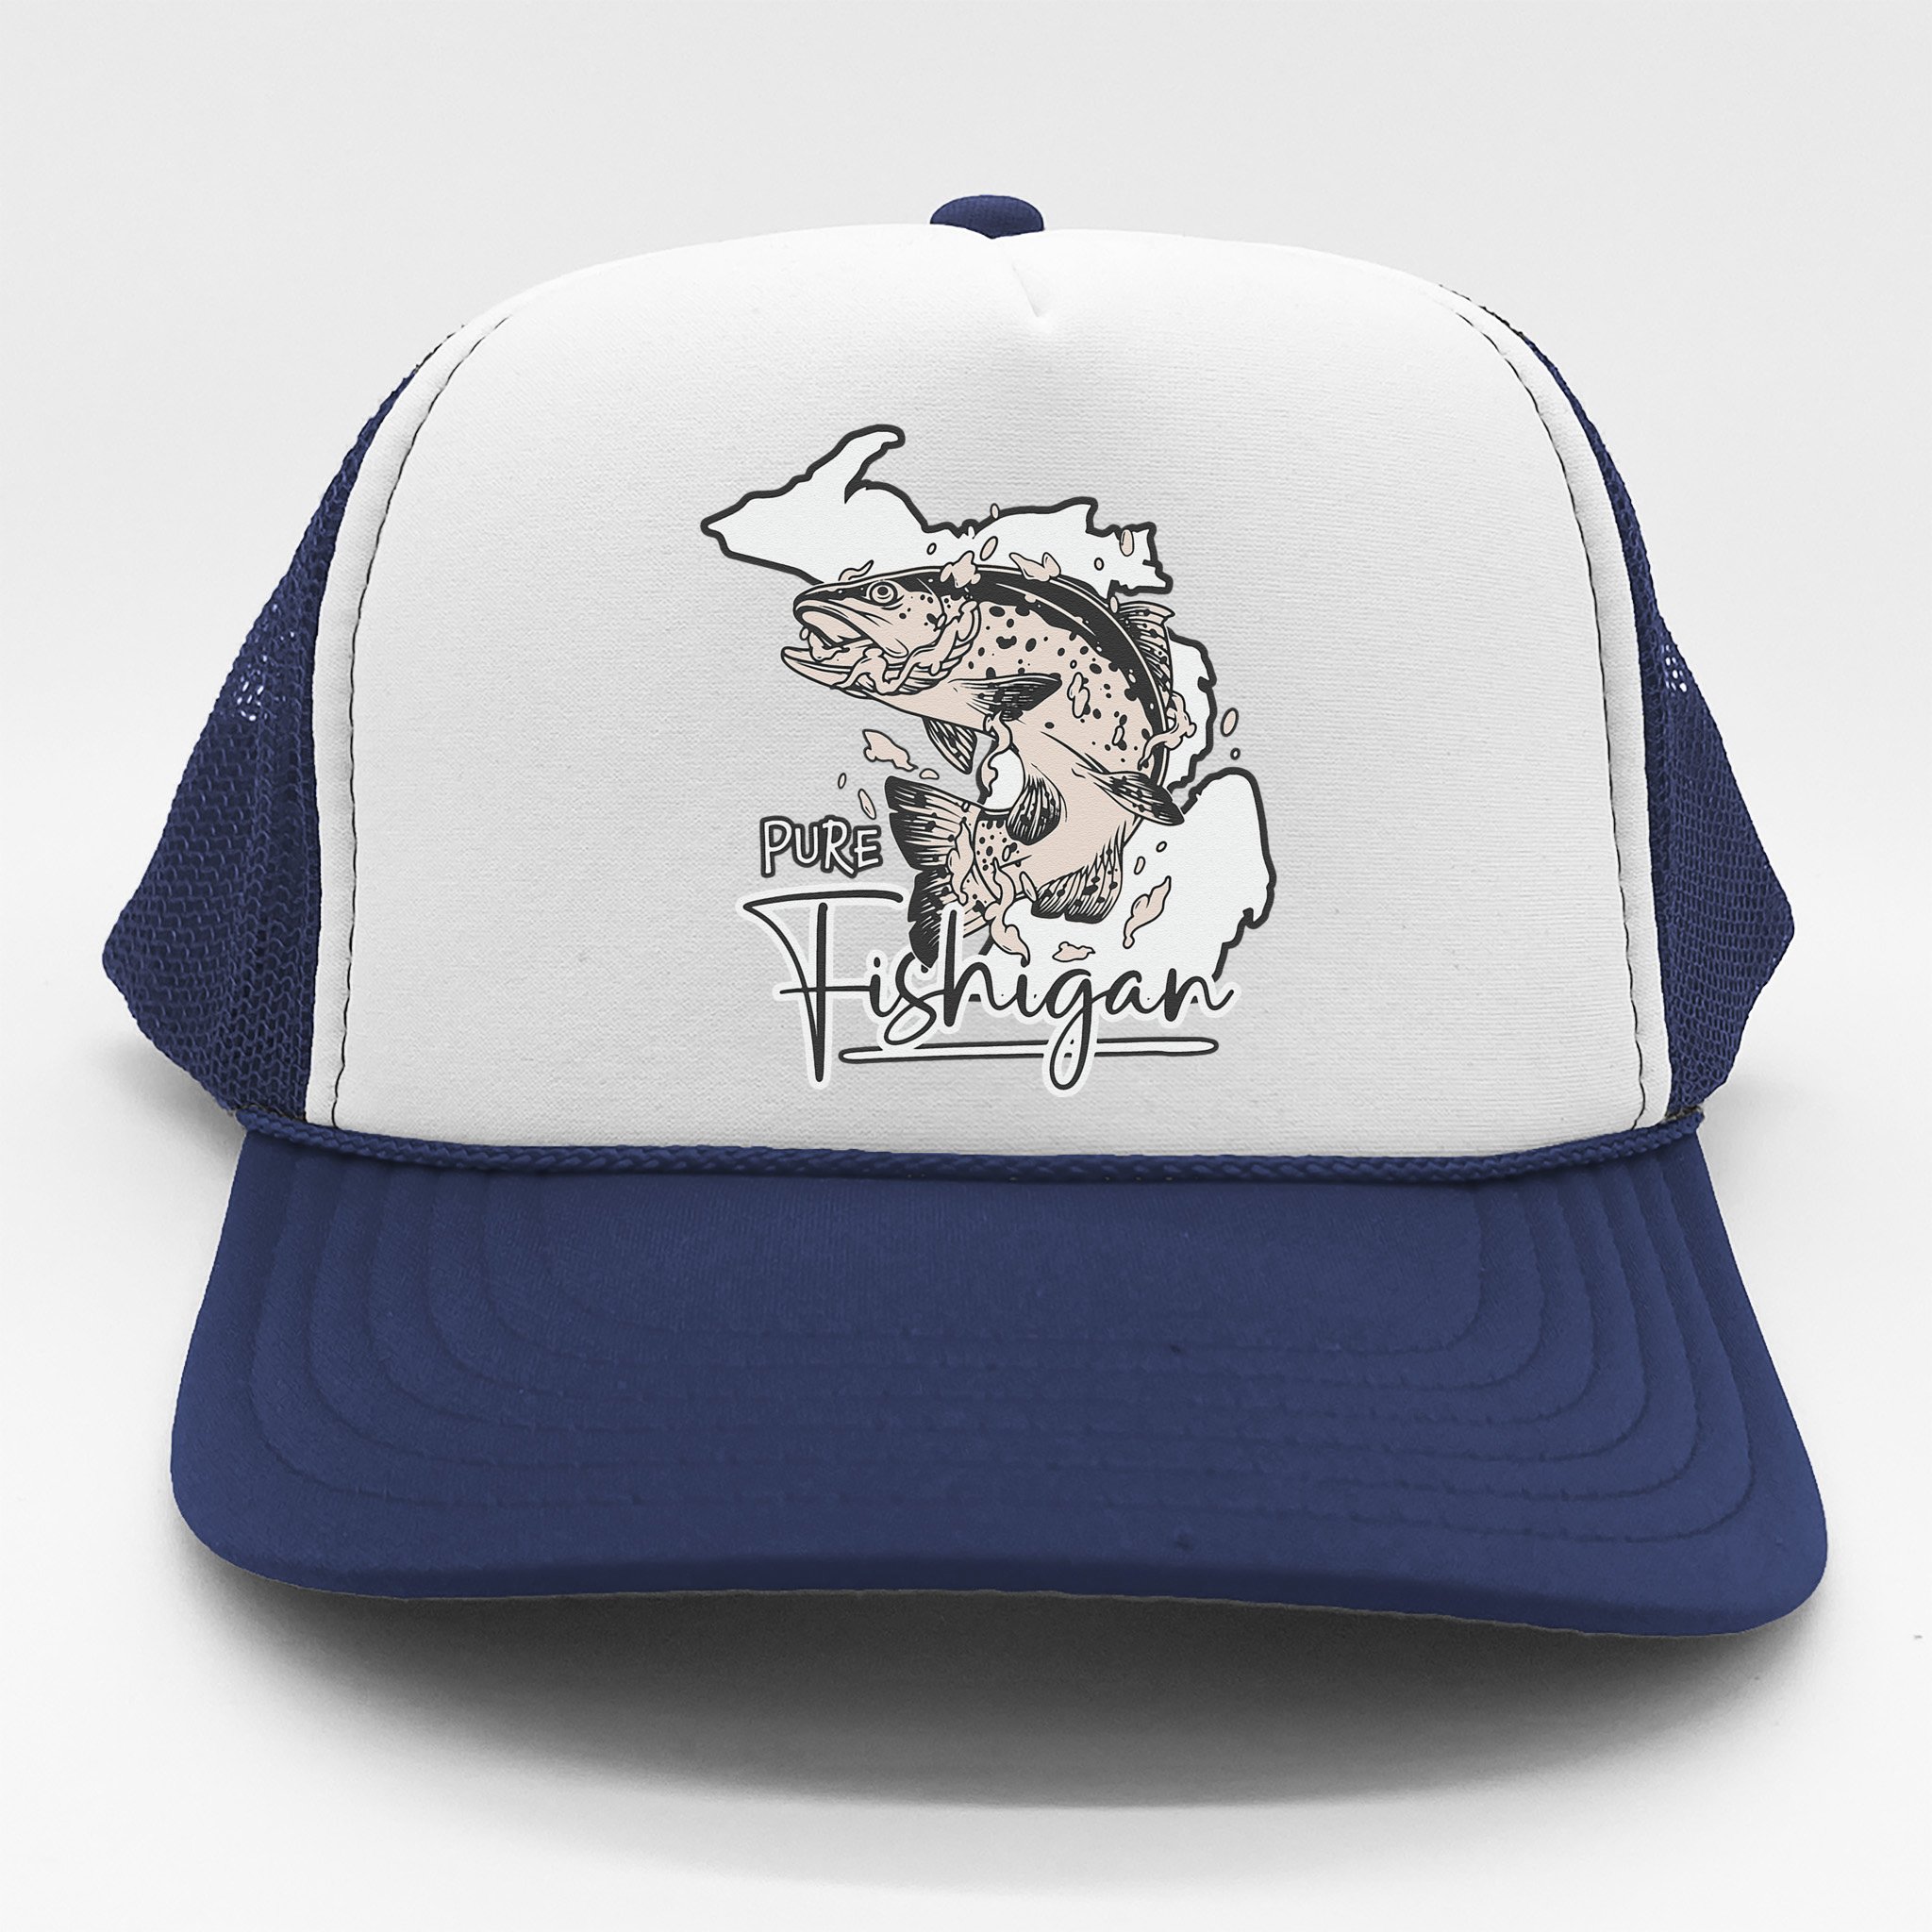 Vintage Fishing Michigan Pun Michigan Fishigan Trucker Hat